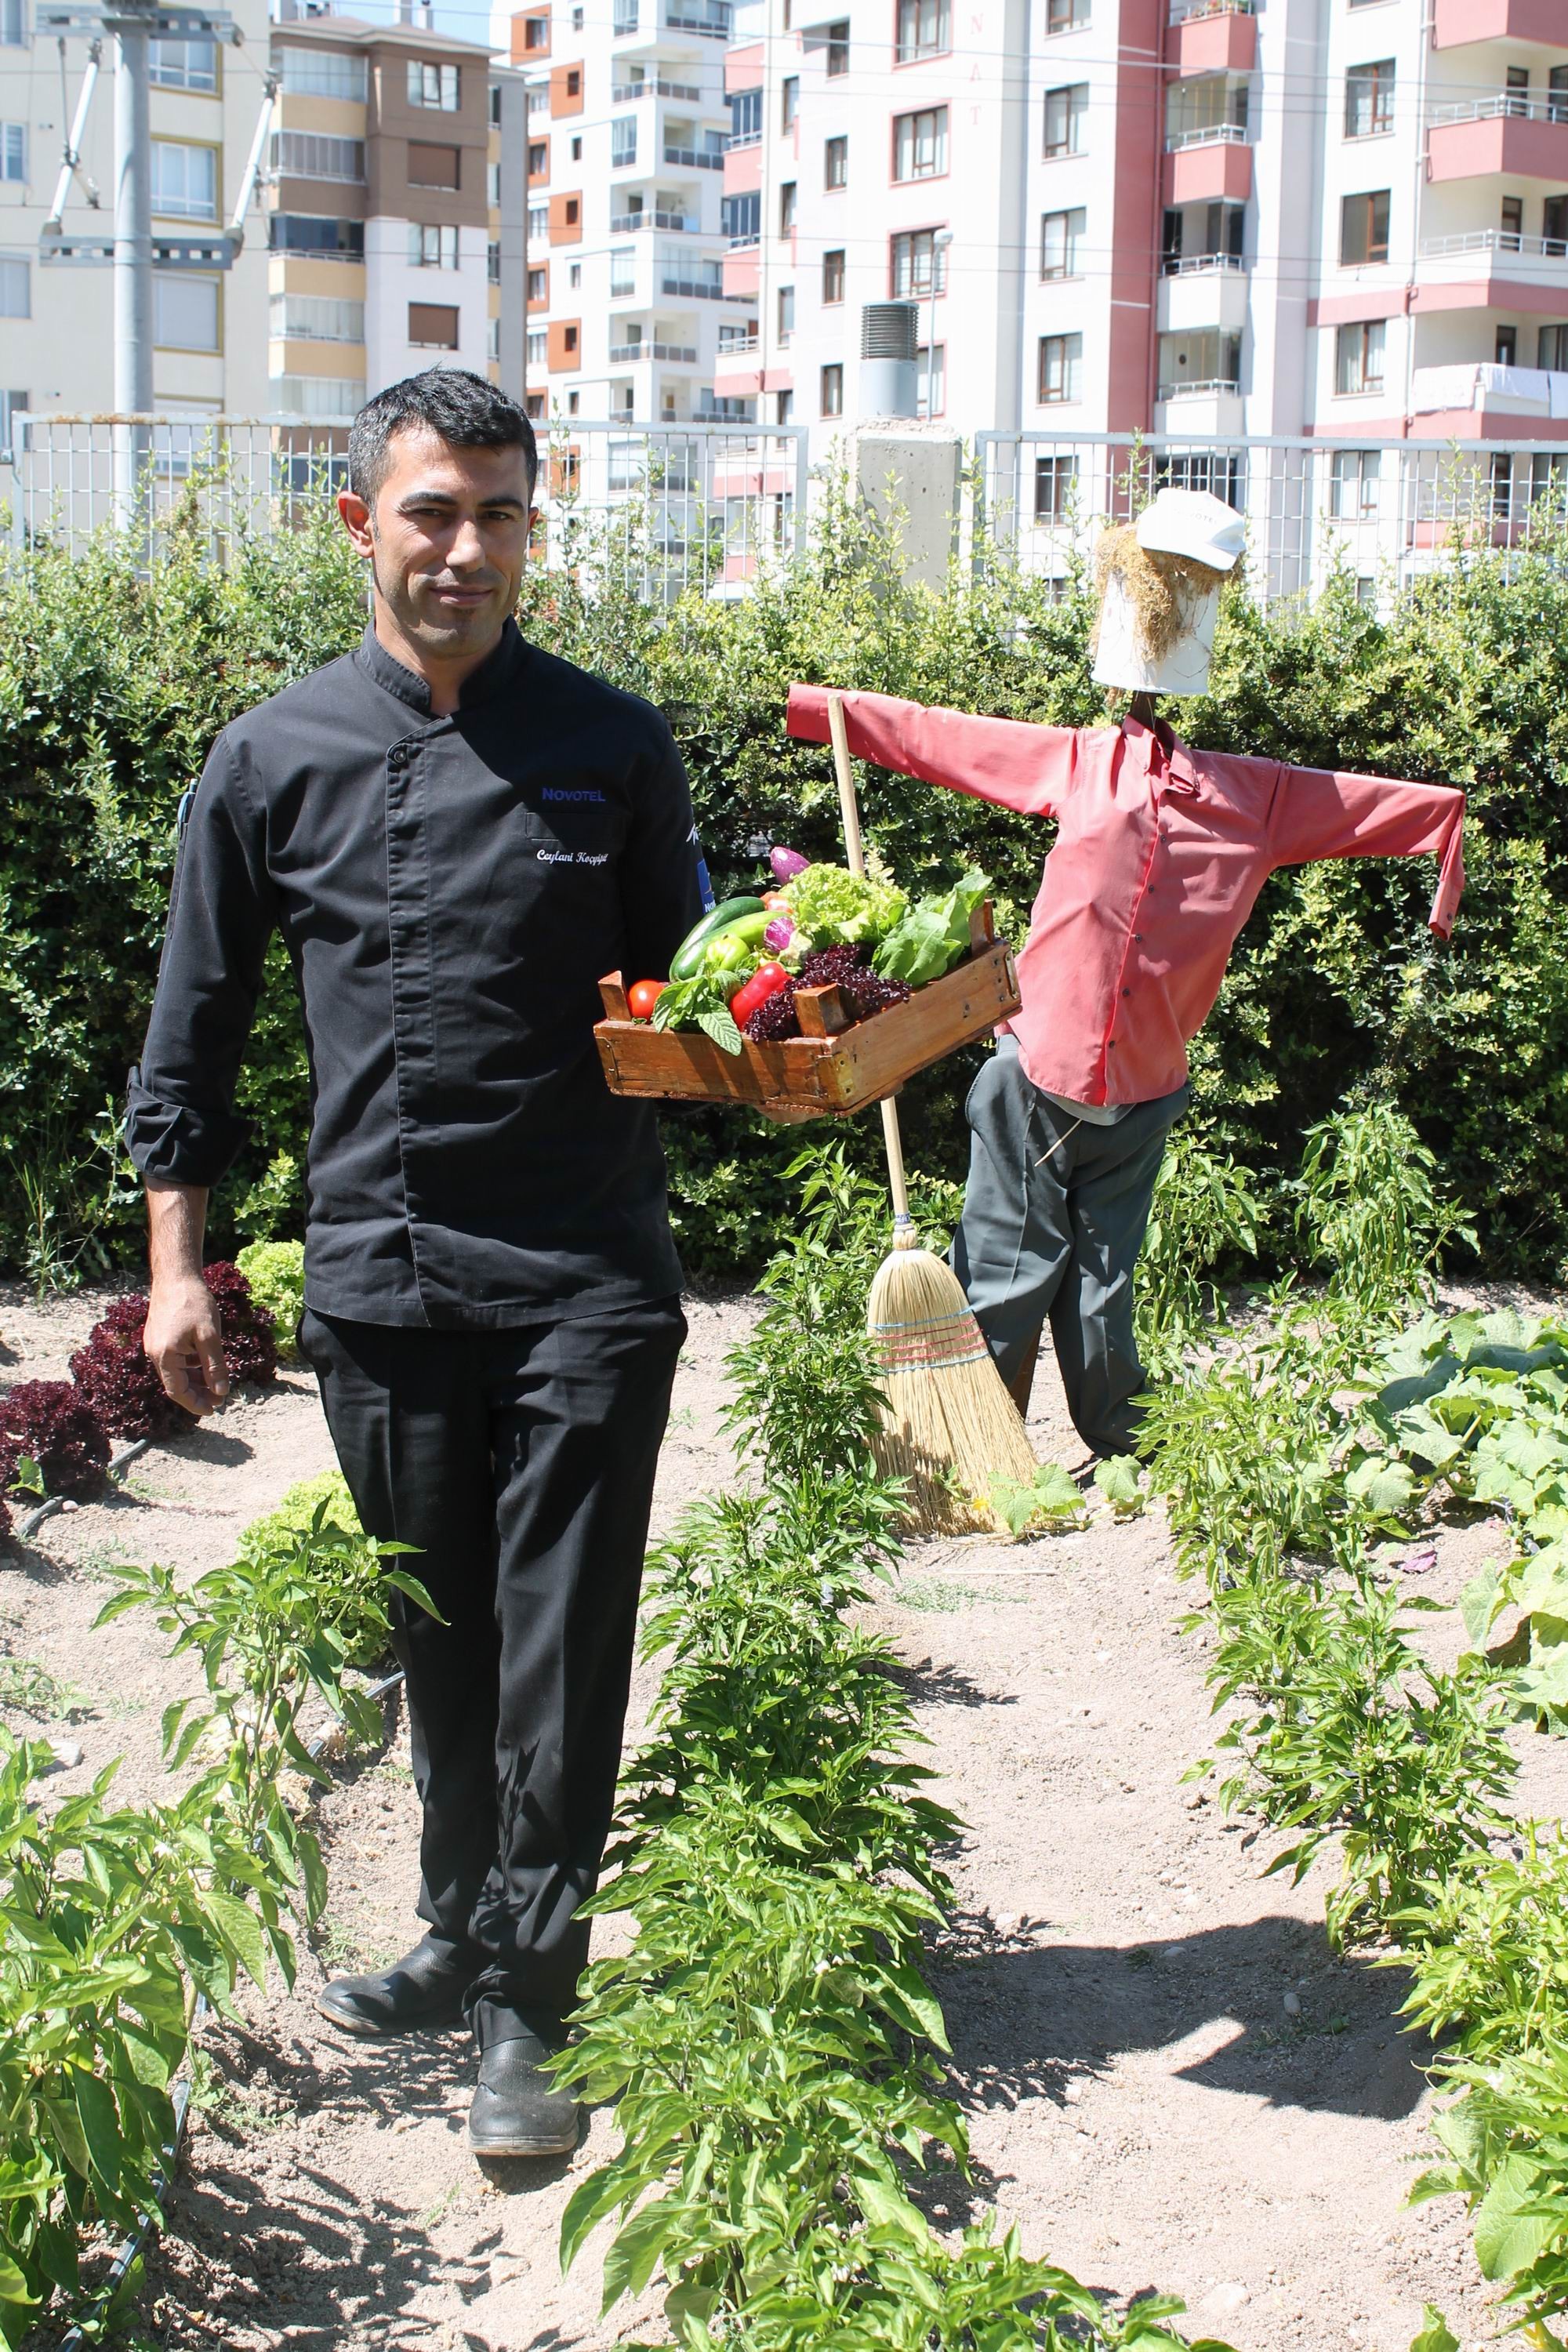 Novotel misafirlerine organik bahçe hizmeti sunuyor